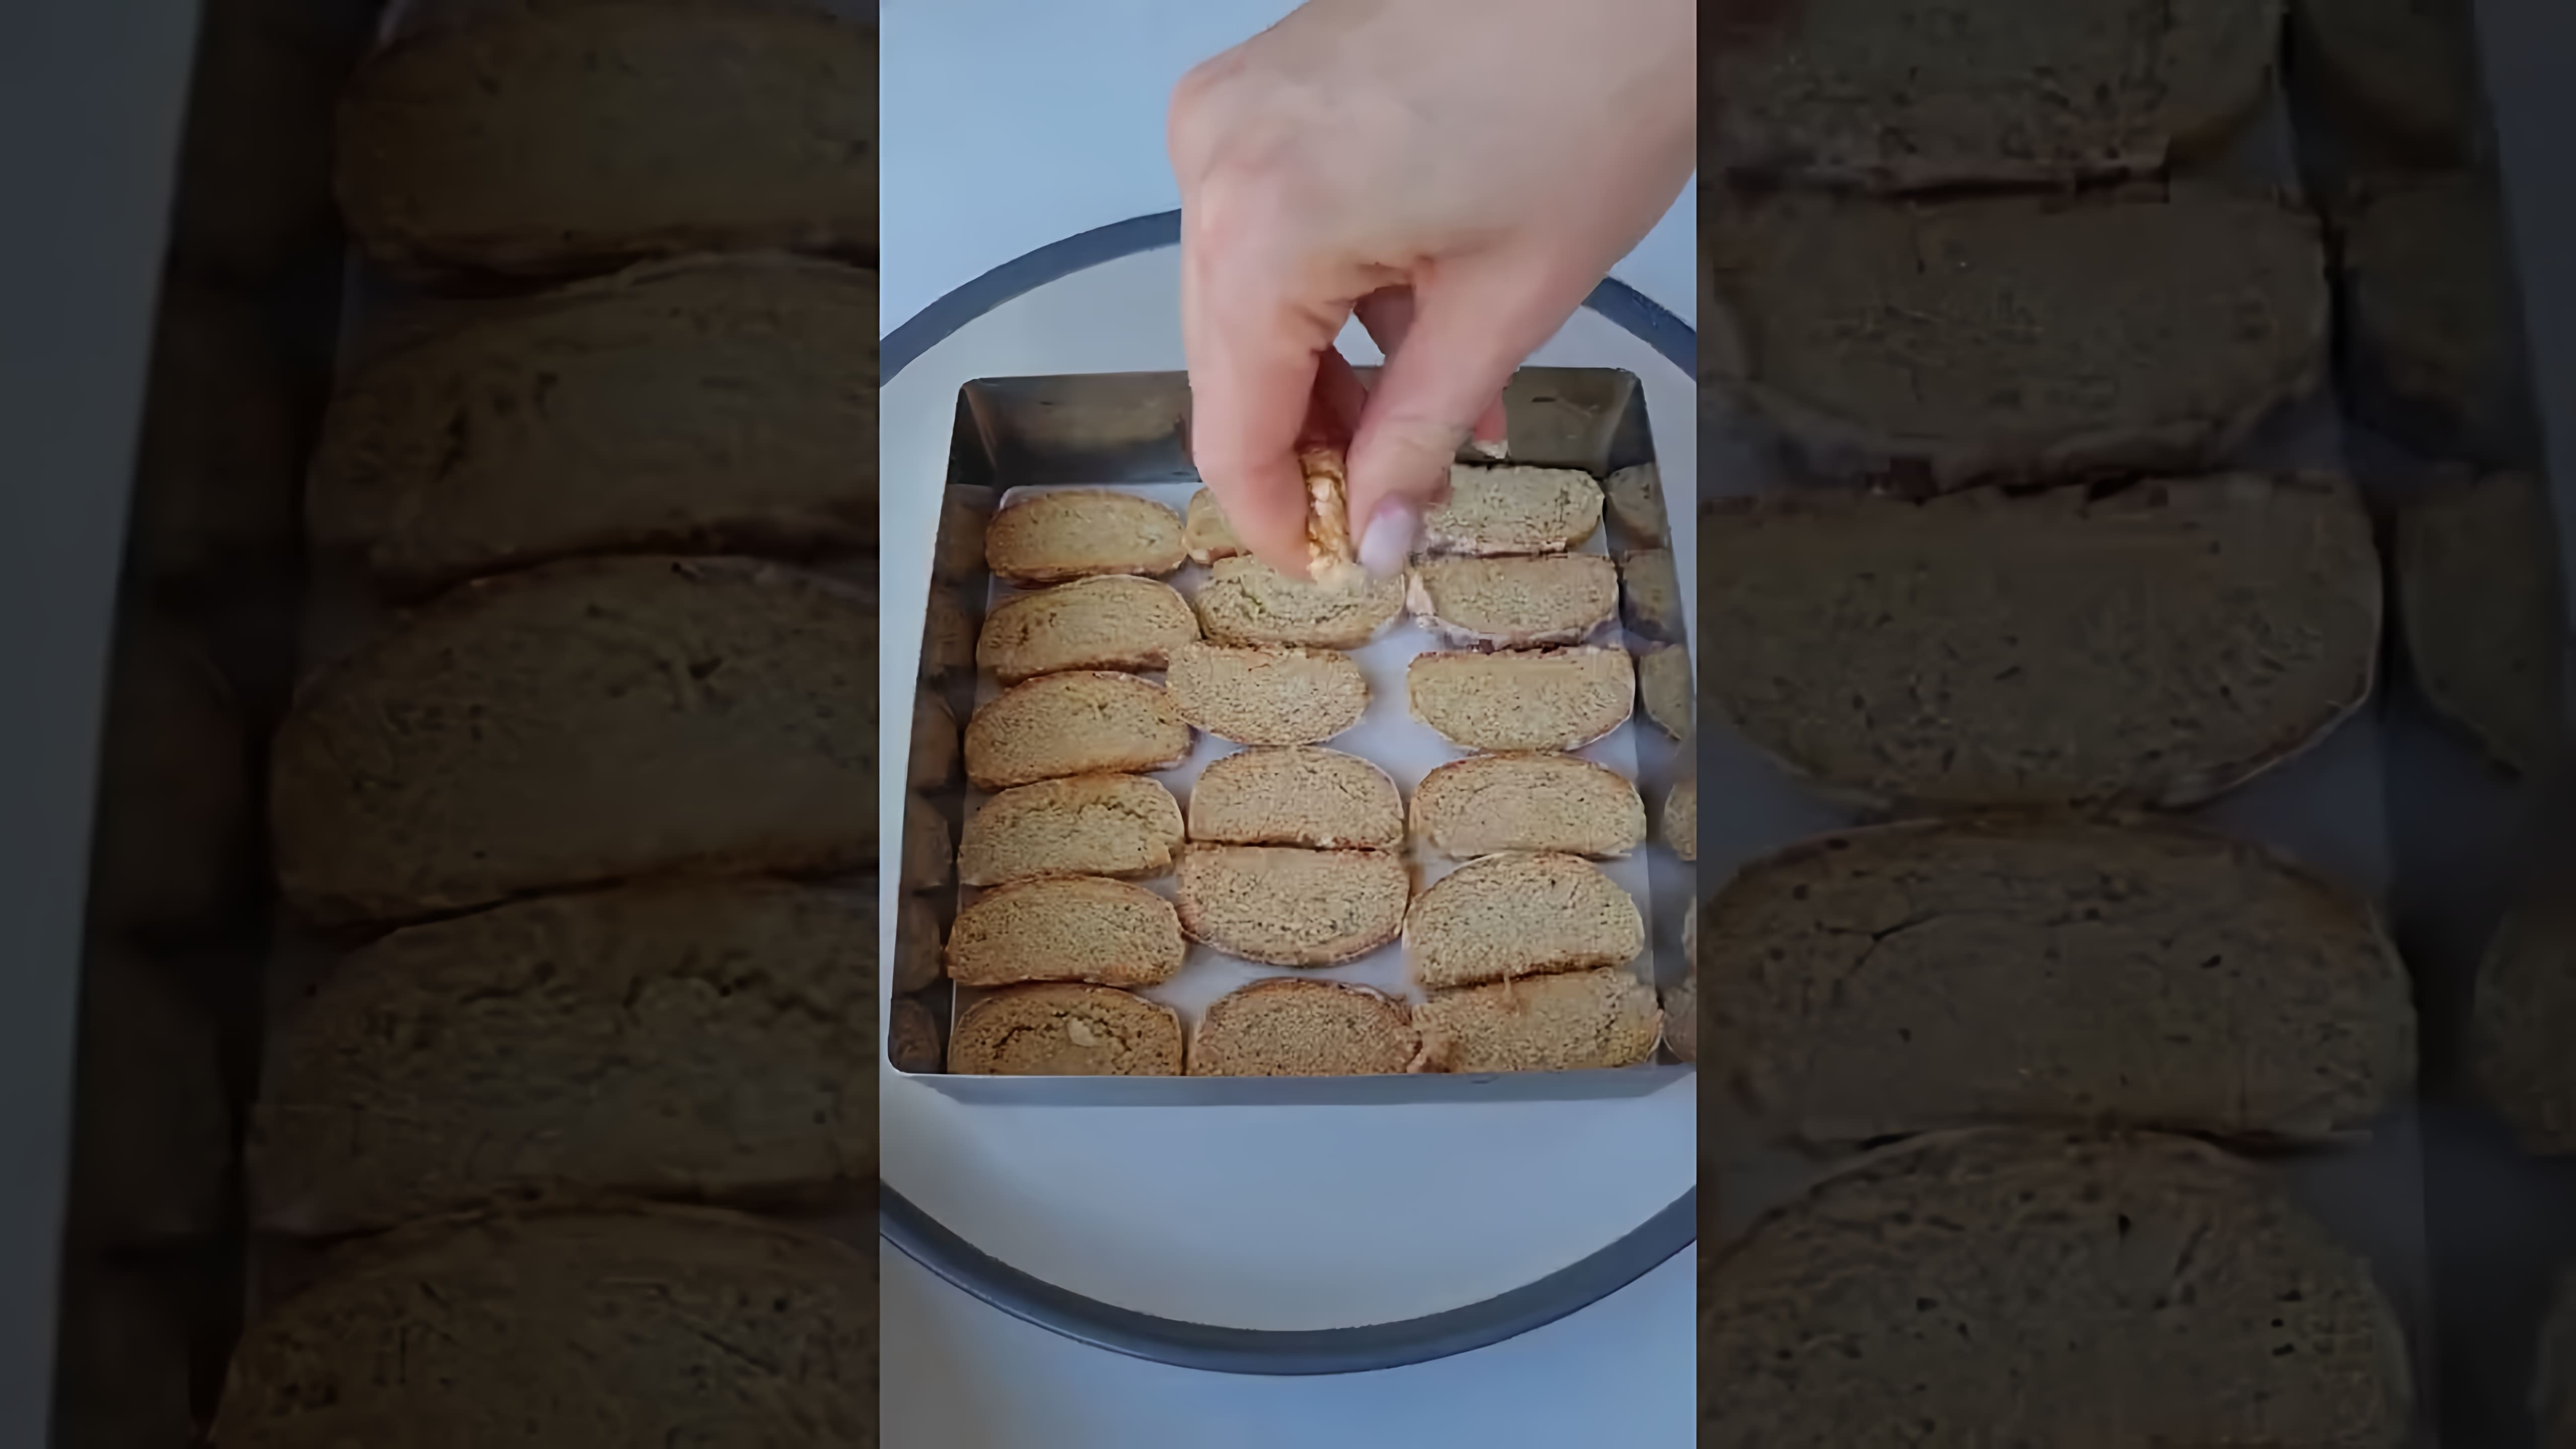 "Торт за 5 минут! Торт из пряников!" - это видео-ролик, который демонстрирует простой и быстрый способ приготовления торта из пряников